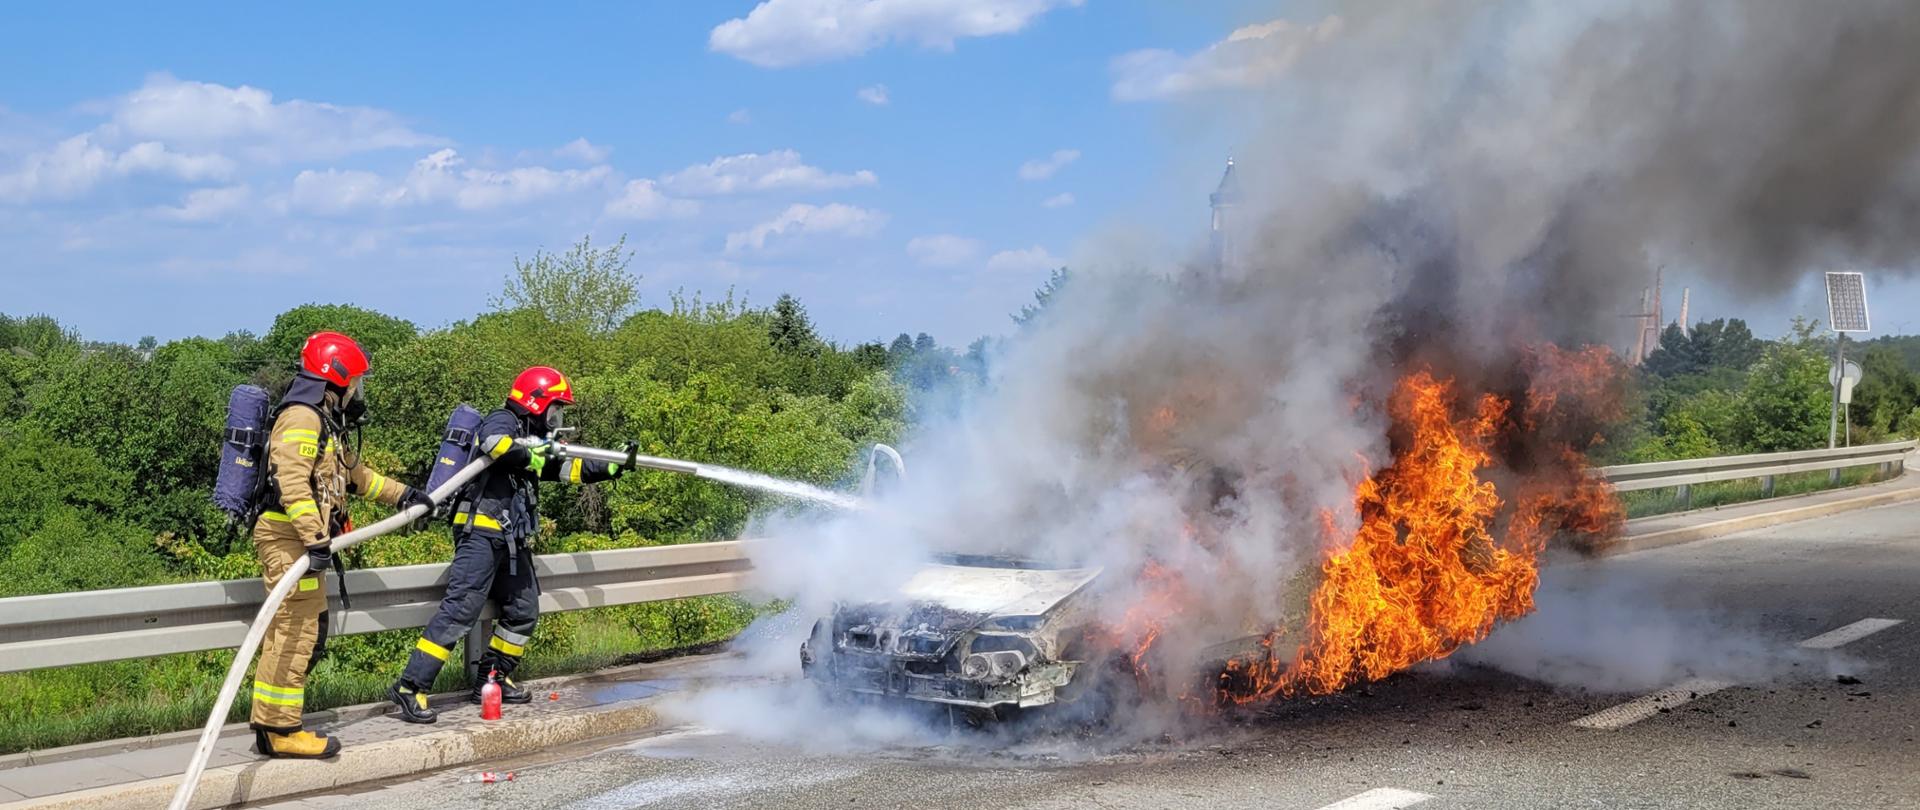  Na zdjęciu widać palący się samochód osobowy i gaszących go dwóch strażaków.